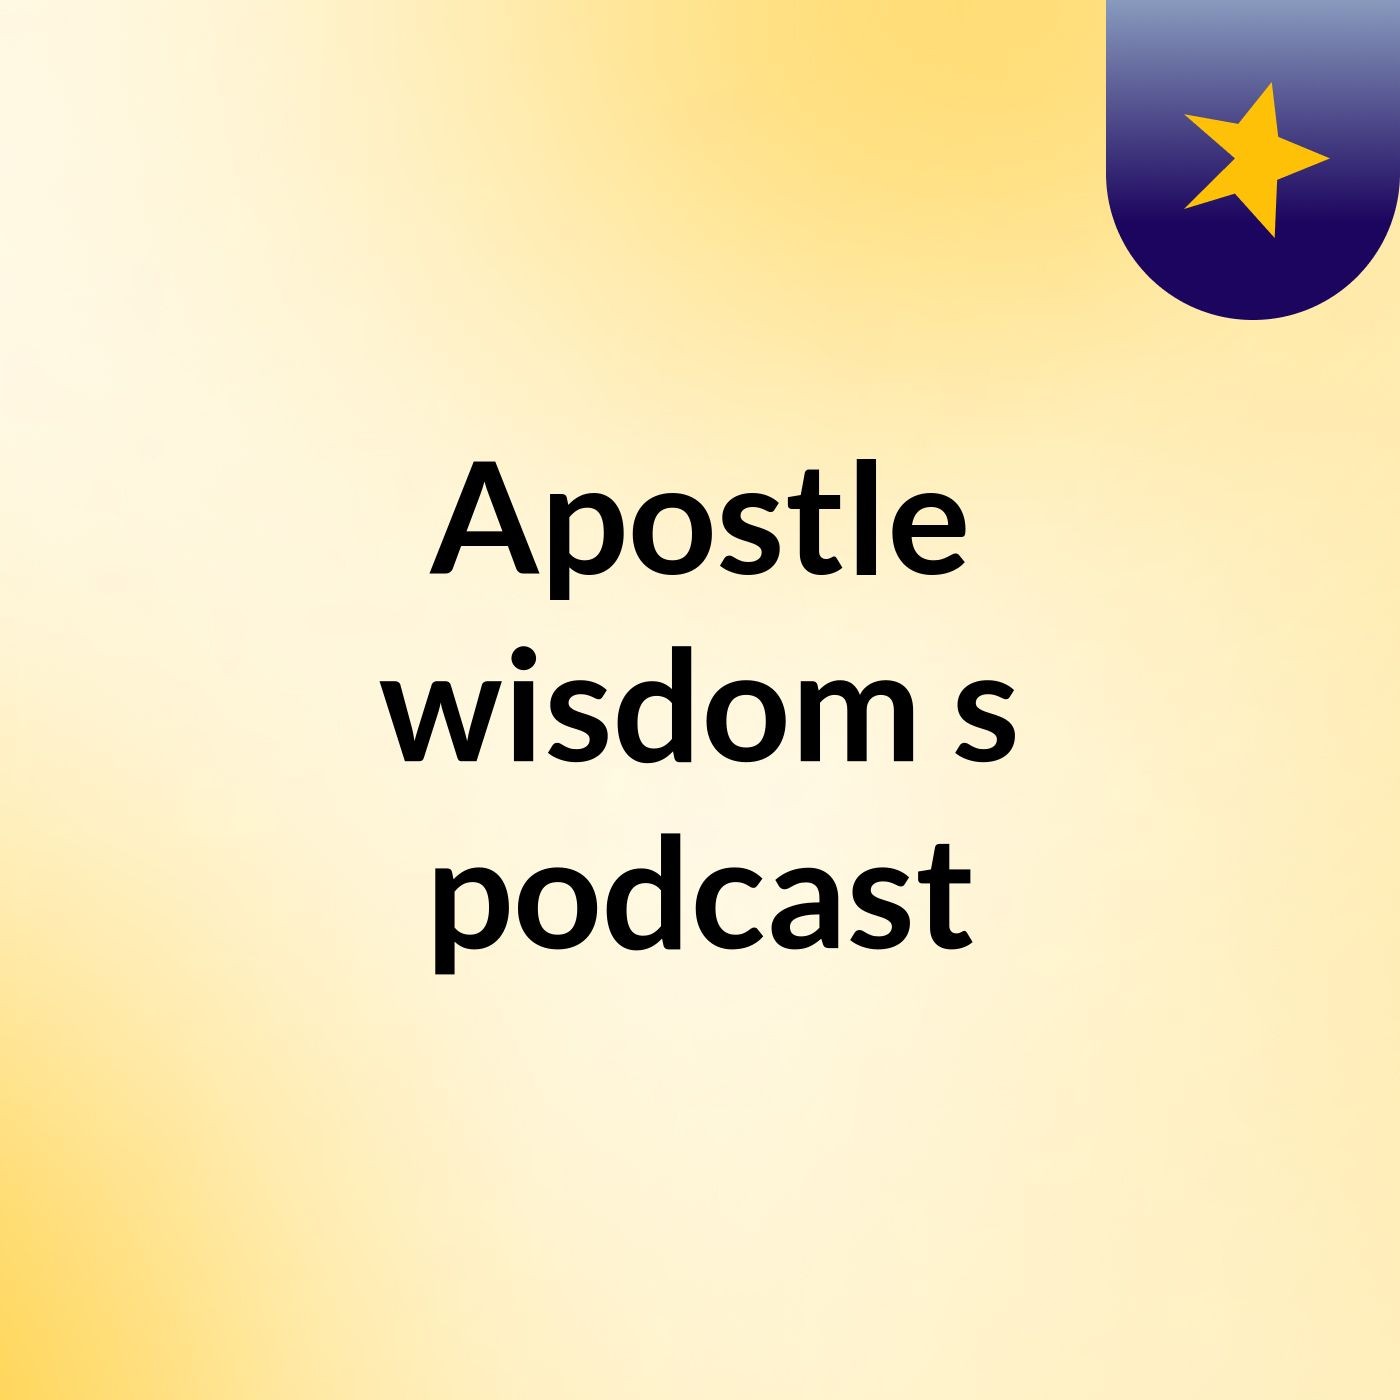 Episode 5 - Apostle wisdom's podcast